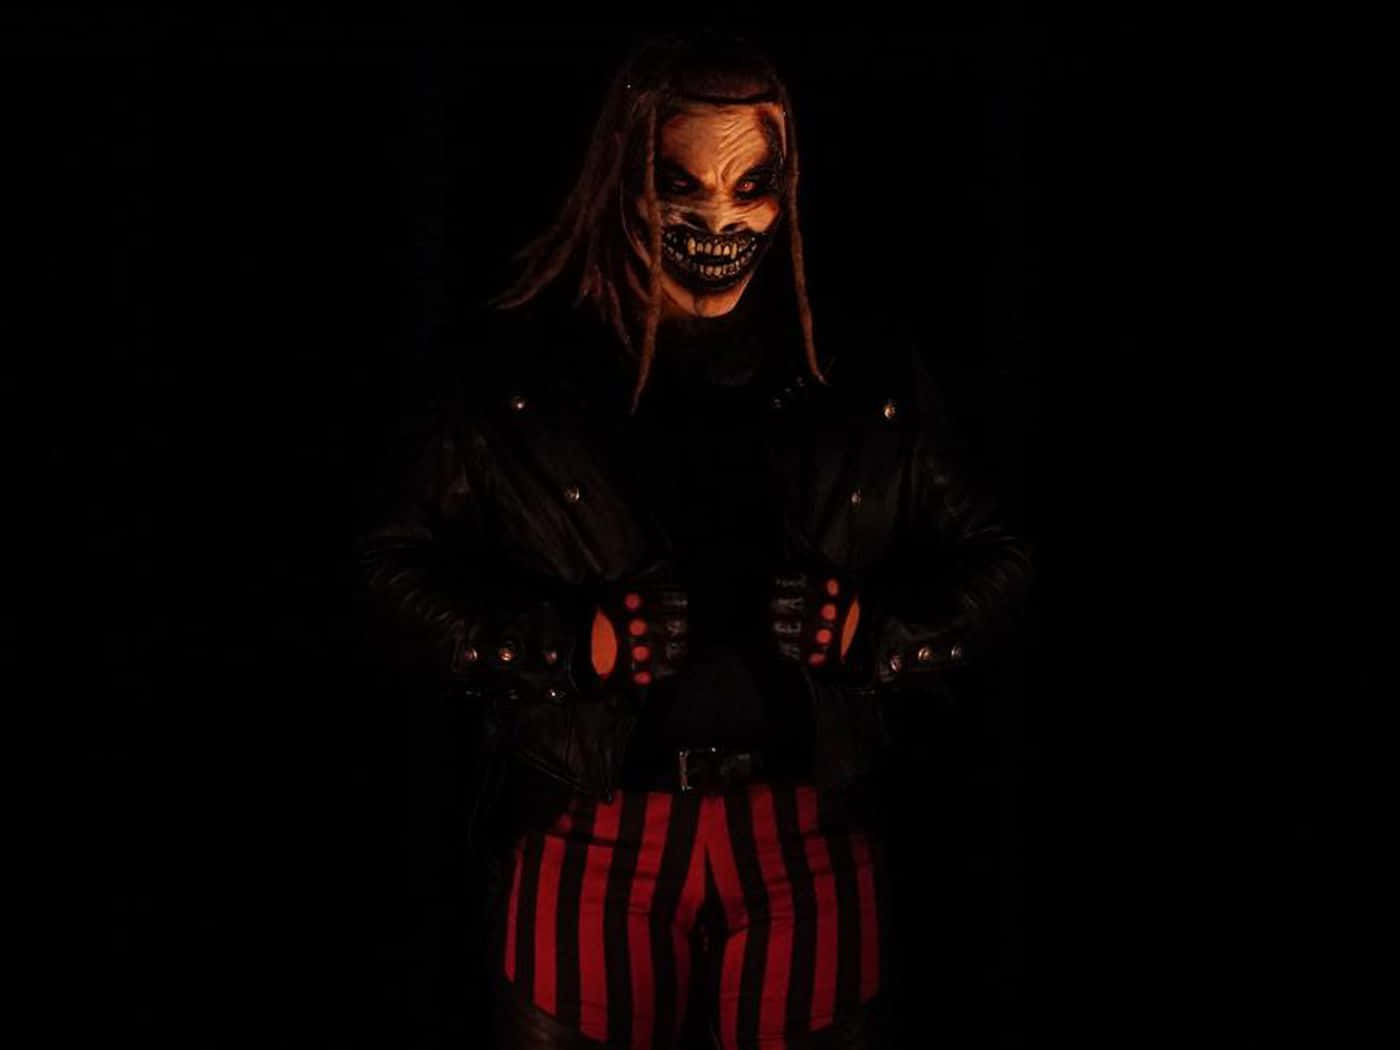 Bray Wyatt The Fiend Mask Wwe Wrestler Wallpaper